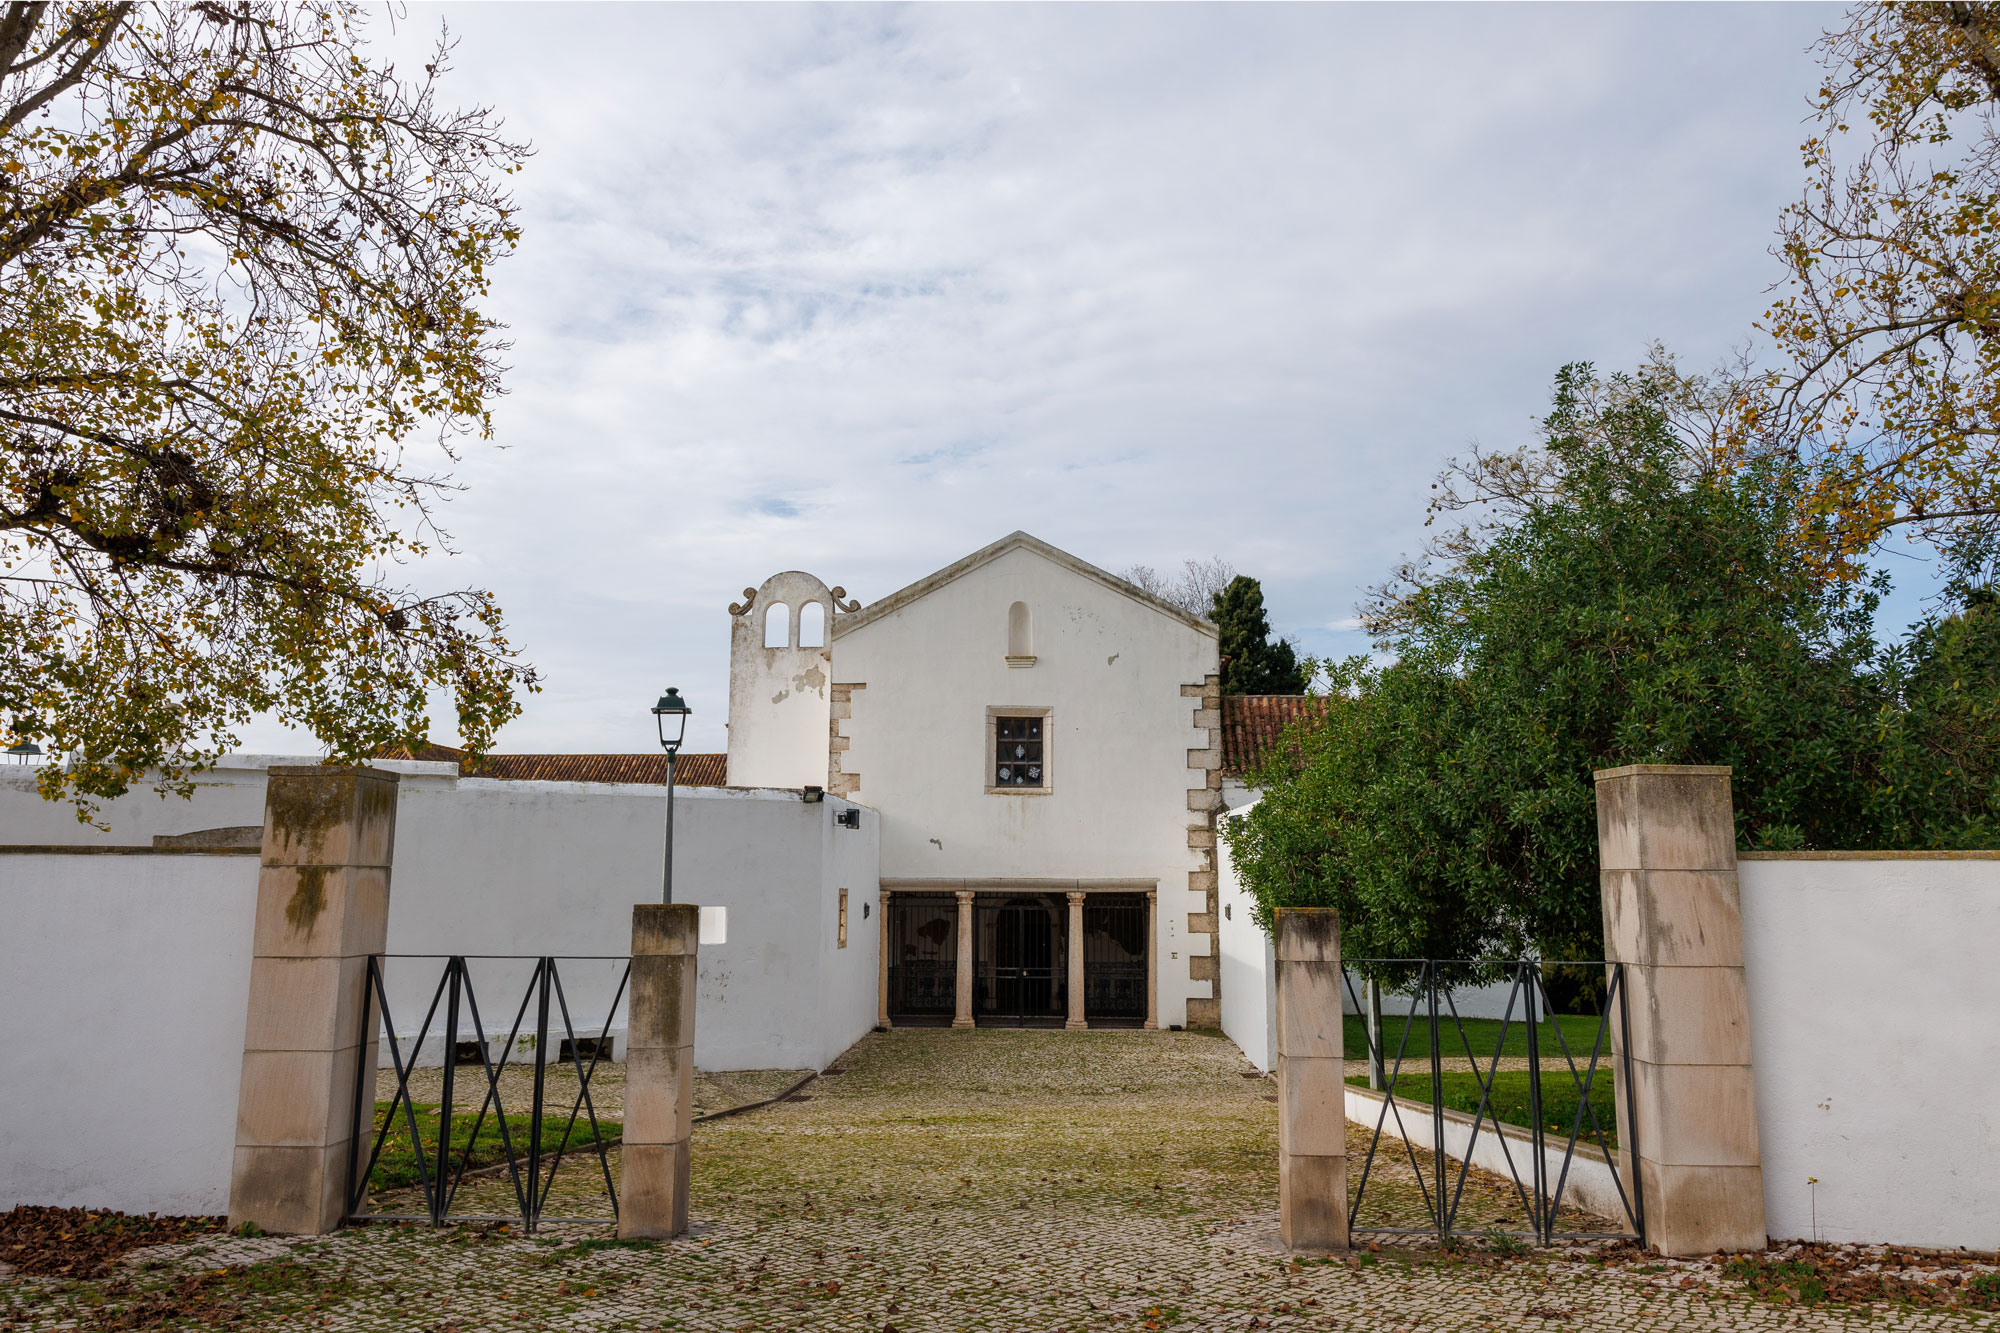 Fotografia do Convento da Madre de Deus da Verderena, no Barreiro